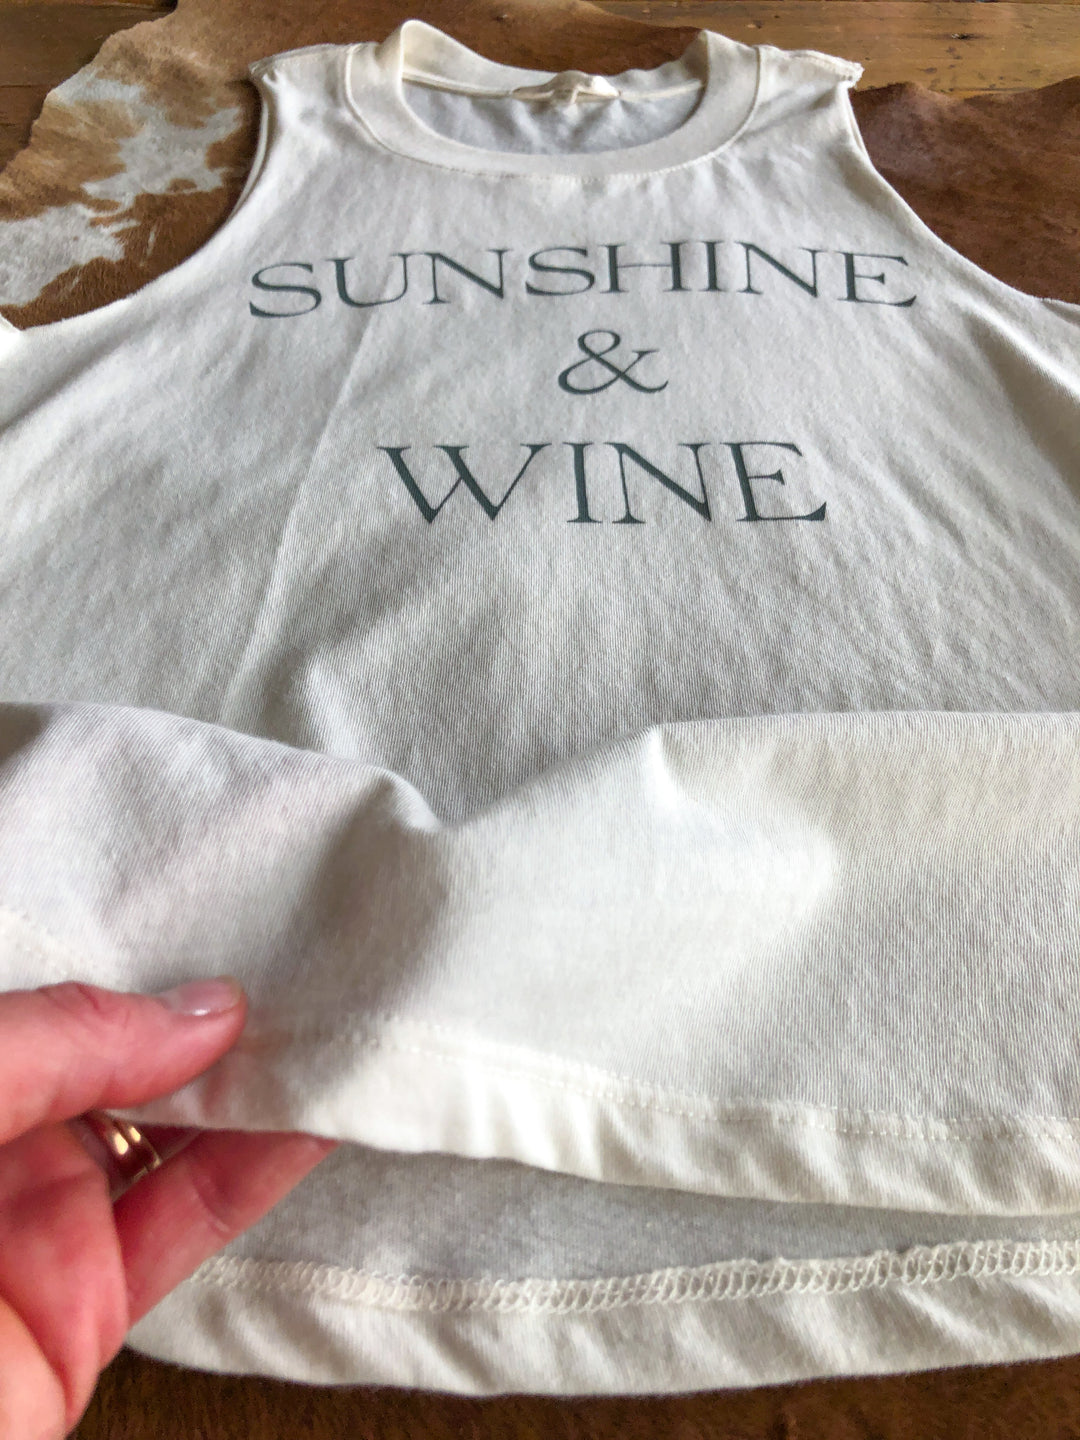 The Sunshine & Wine